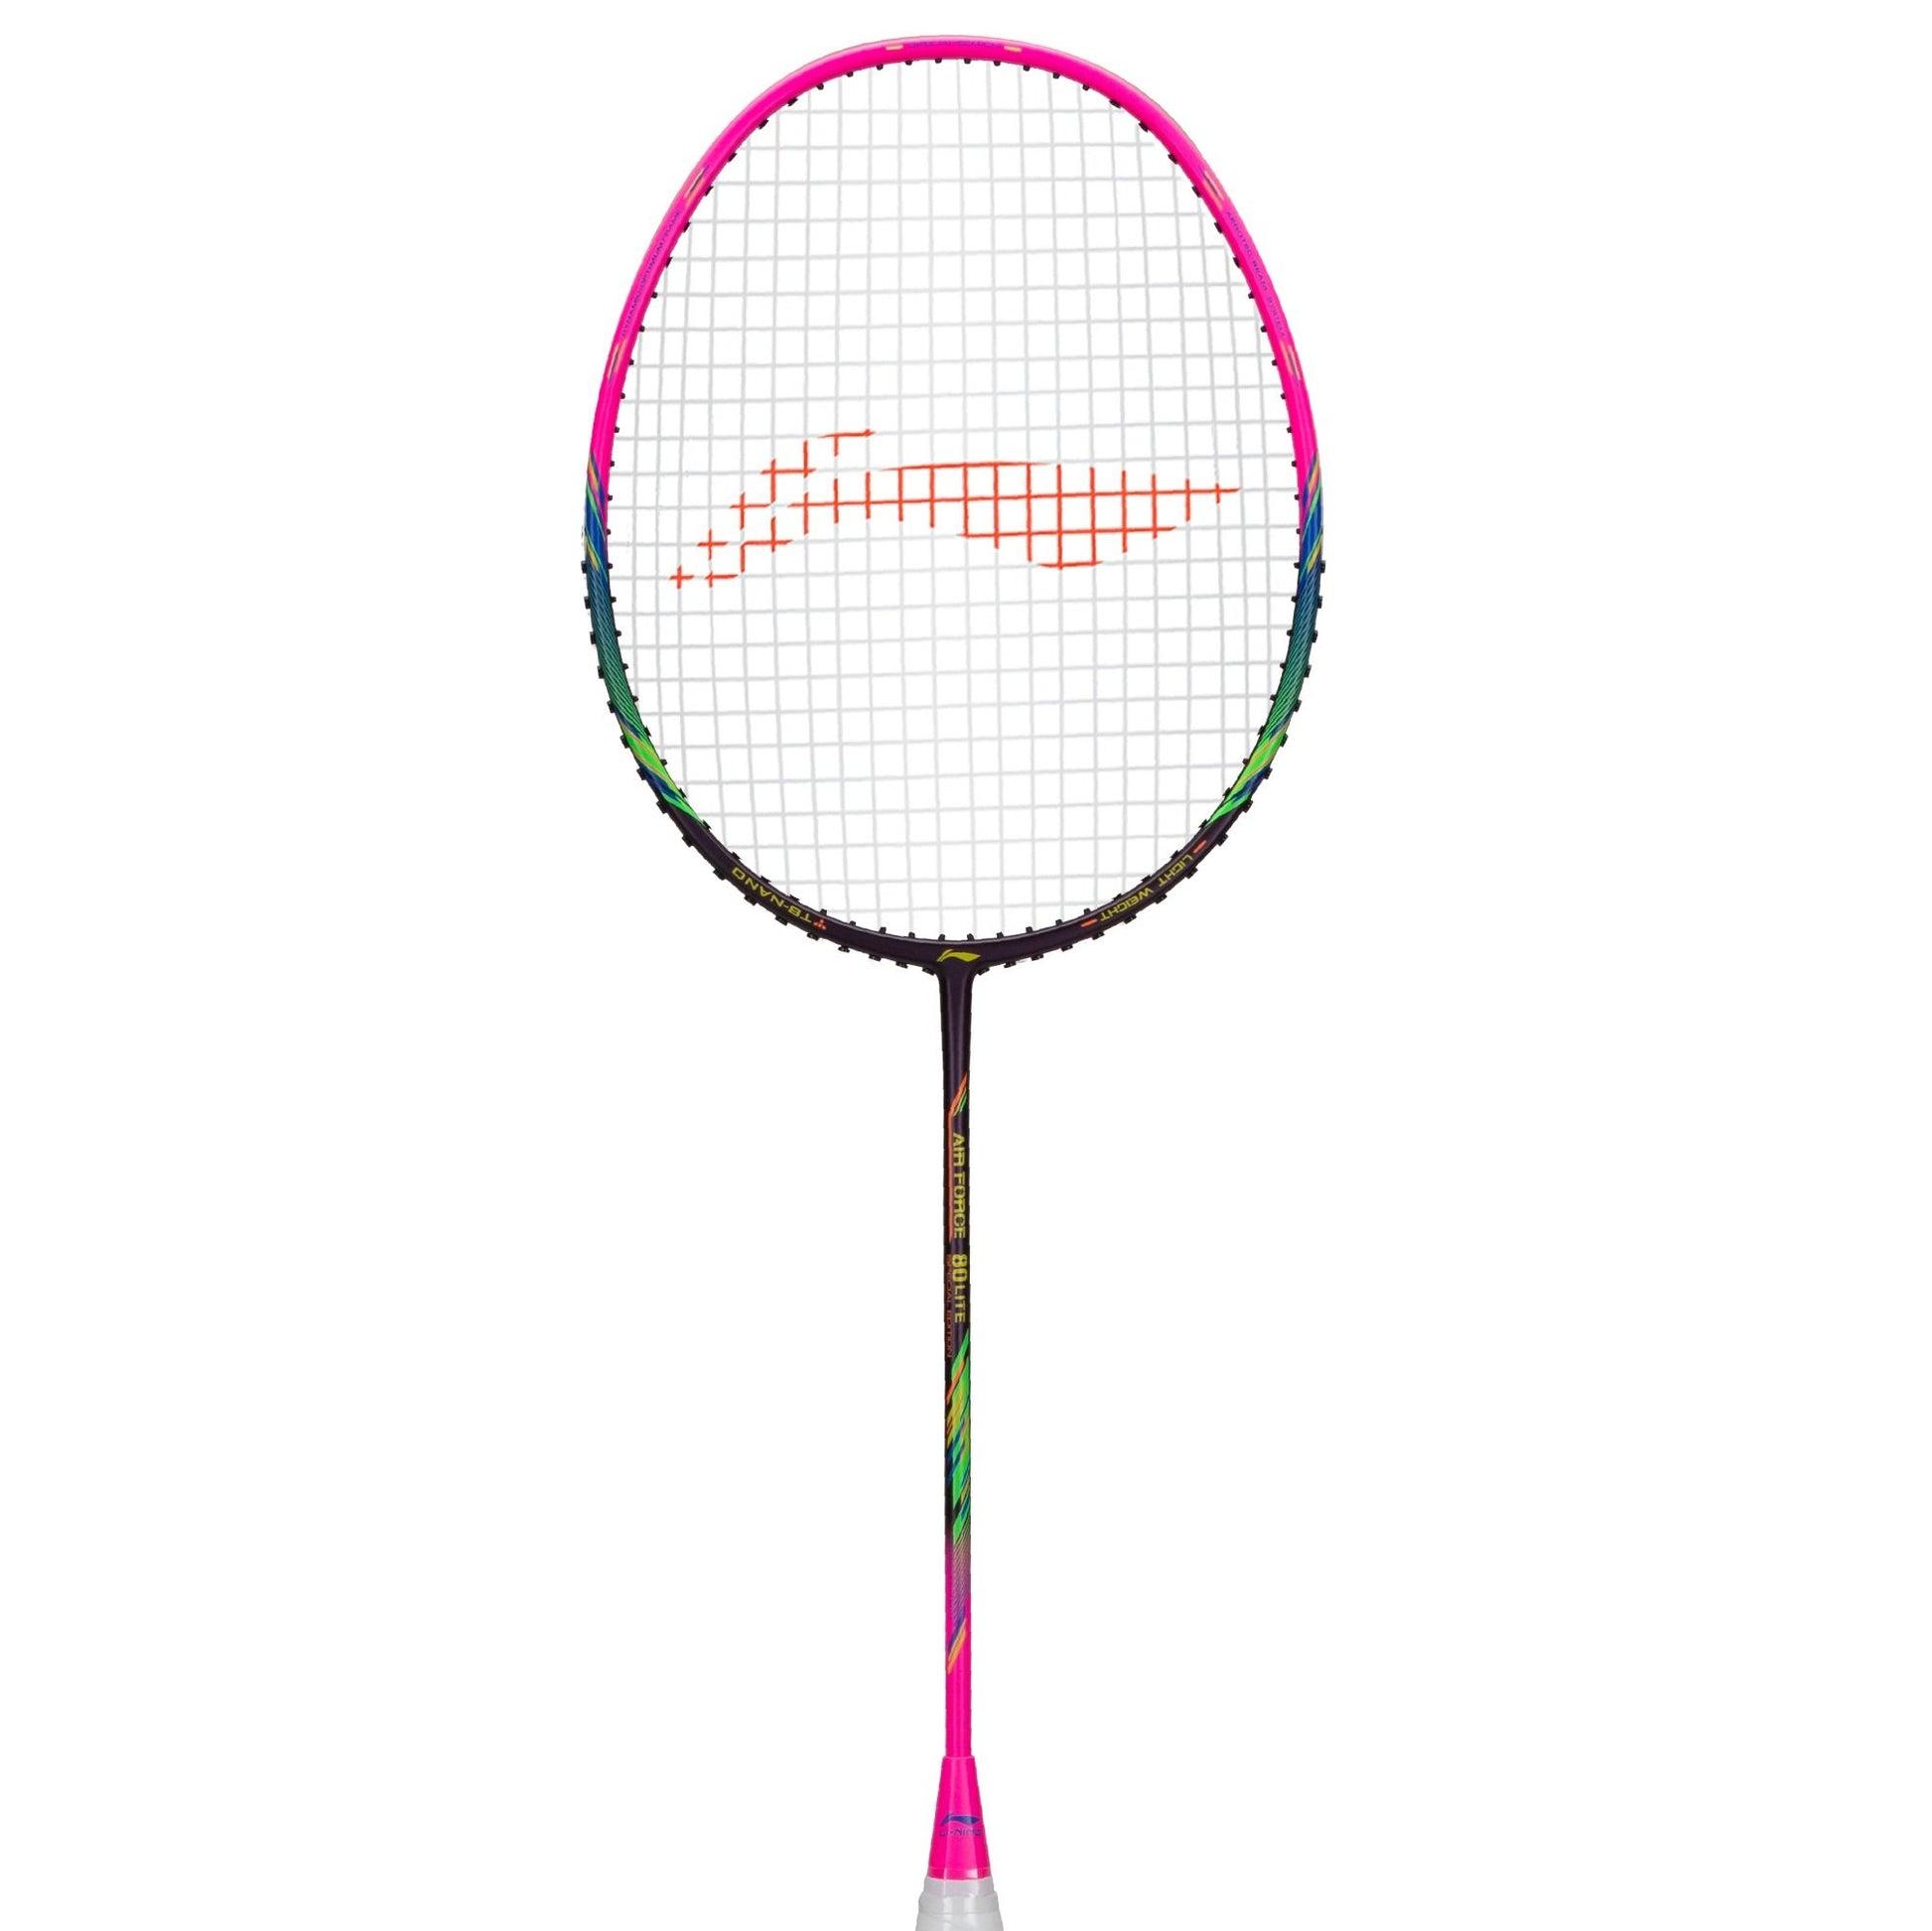 Li-Ning Air-Force 80 Lite Badminton Racket (Dark Purple/Pink)